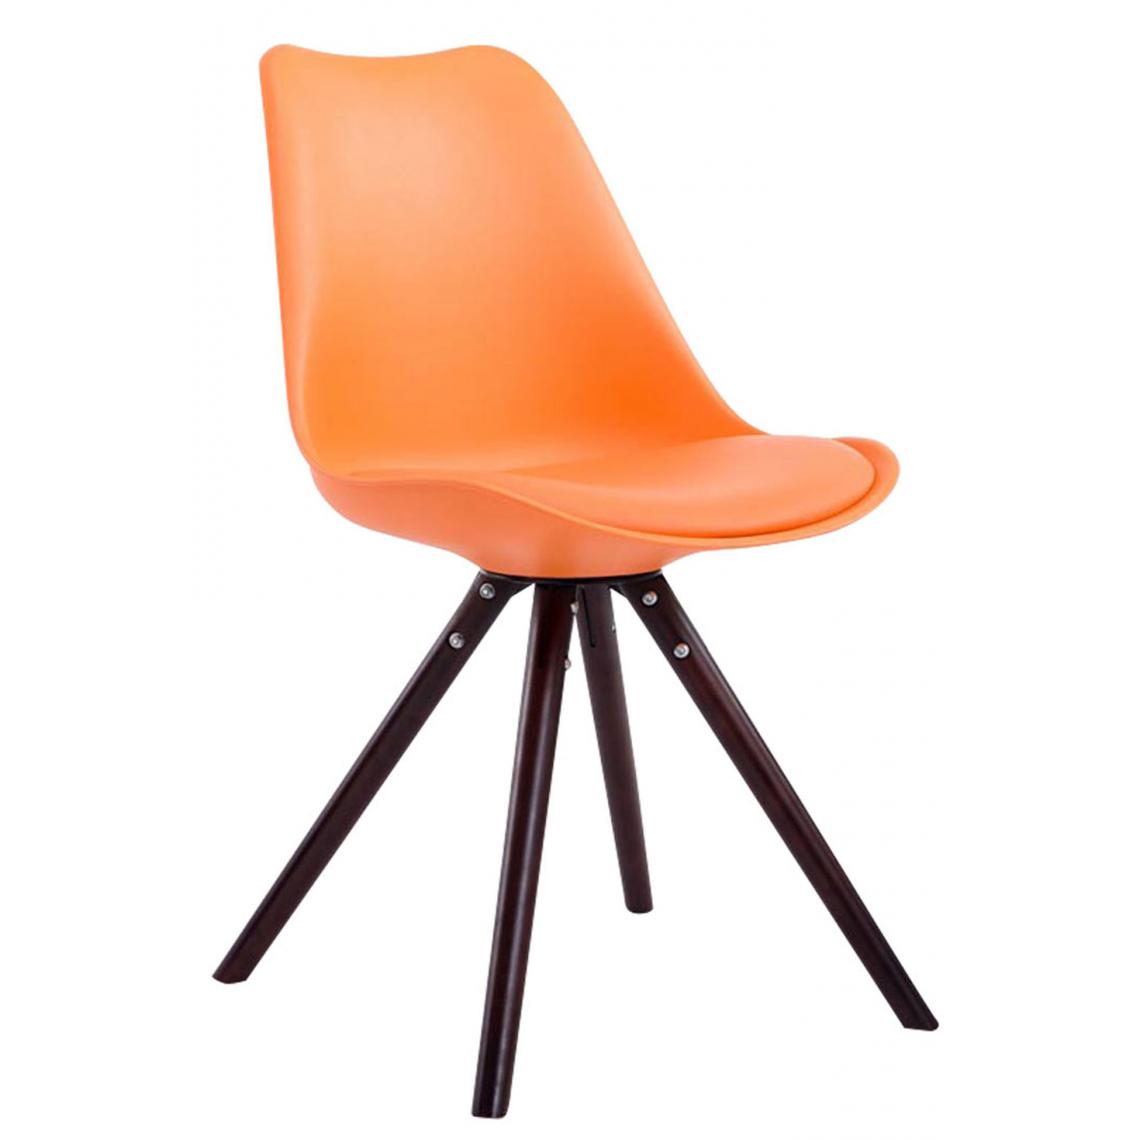 Icaverne - Esthetique Chaise visiteur ronde gamme Katmandou Cappuccino couleur Orange - Chaises